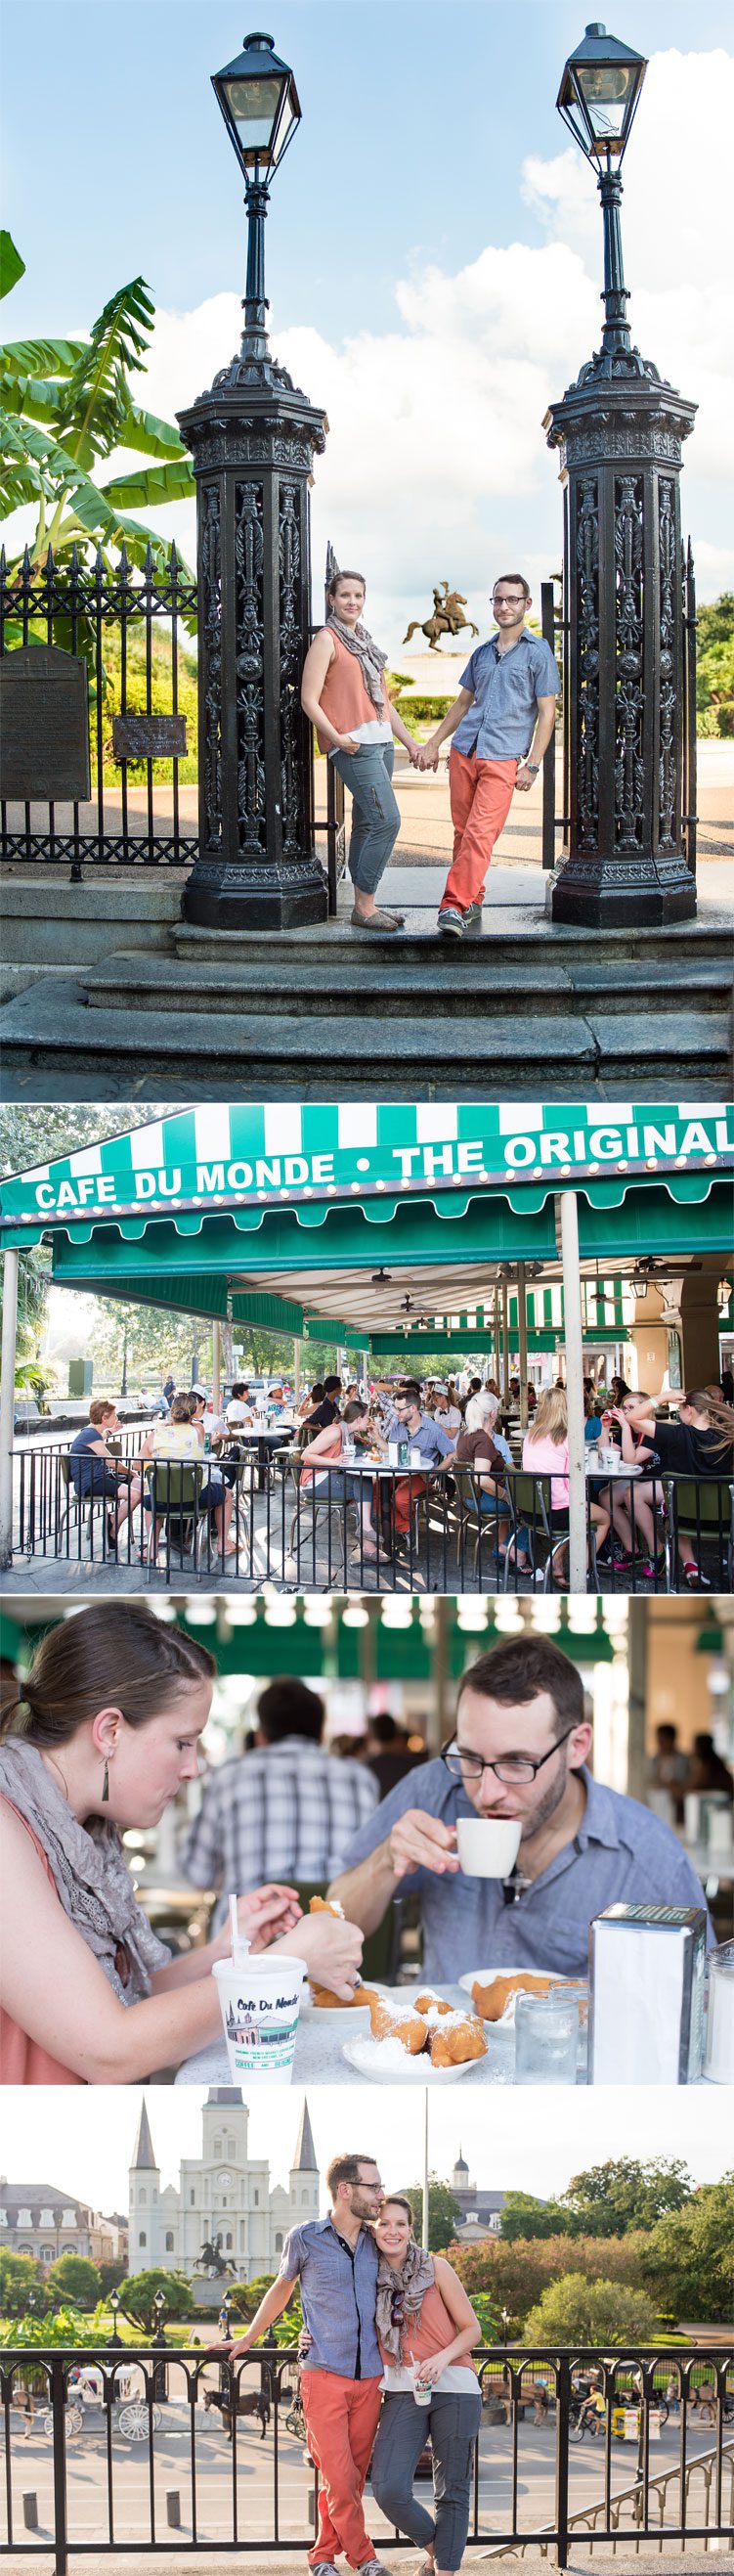 New Orleans Cafe du Monde Visit